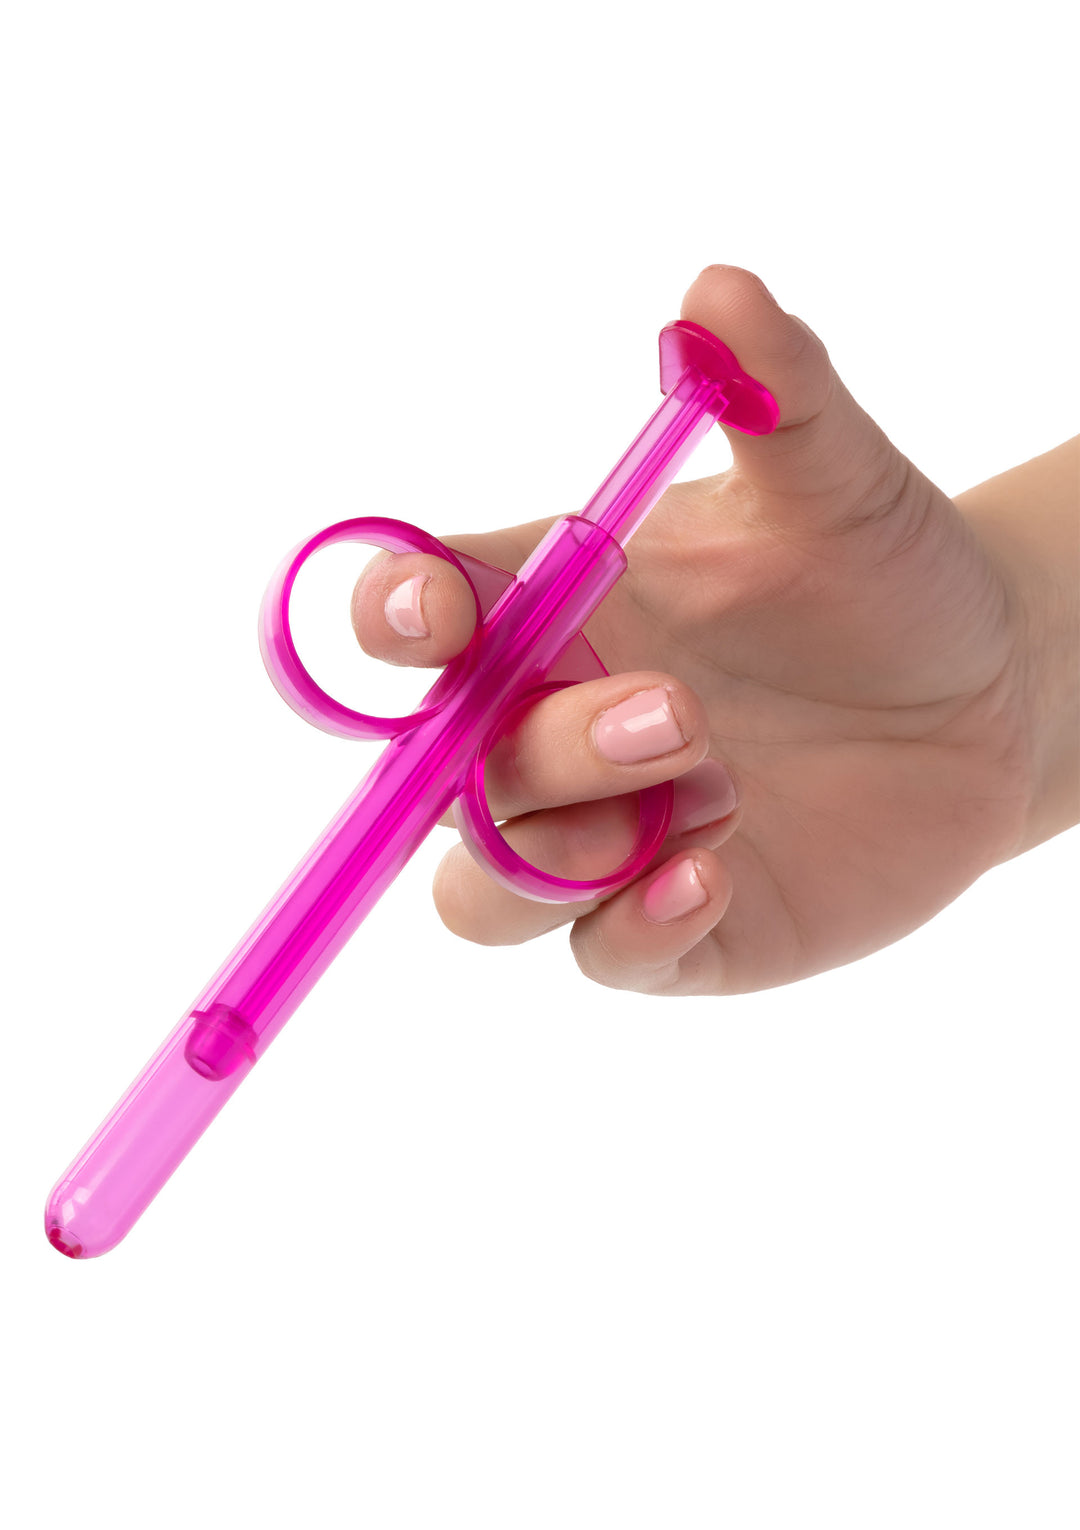 Pink lubricant anal vaginal dispenser syringe